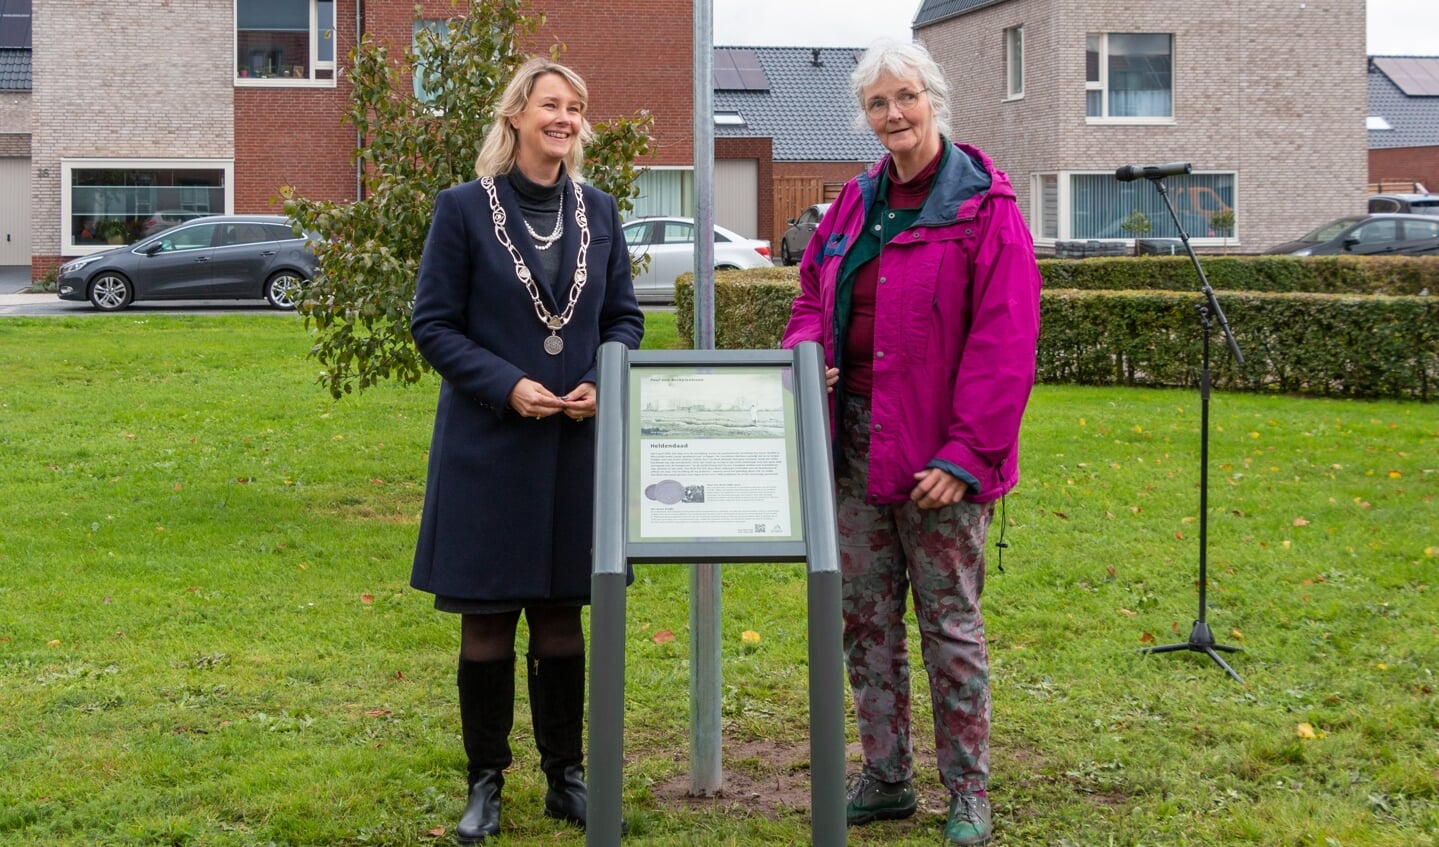 Locoburgemeester Laura Werger en kleindochter Marianne van Bork bij het zojuist onthulde monumentenbord. Foto: Henk Derksen 